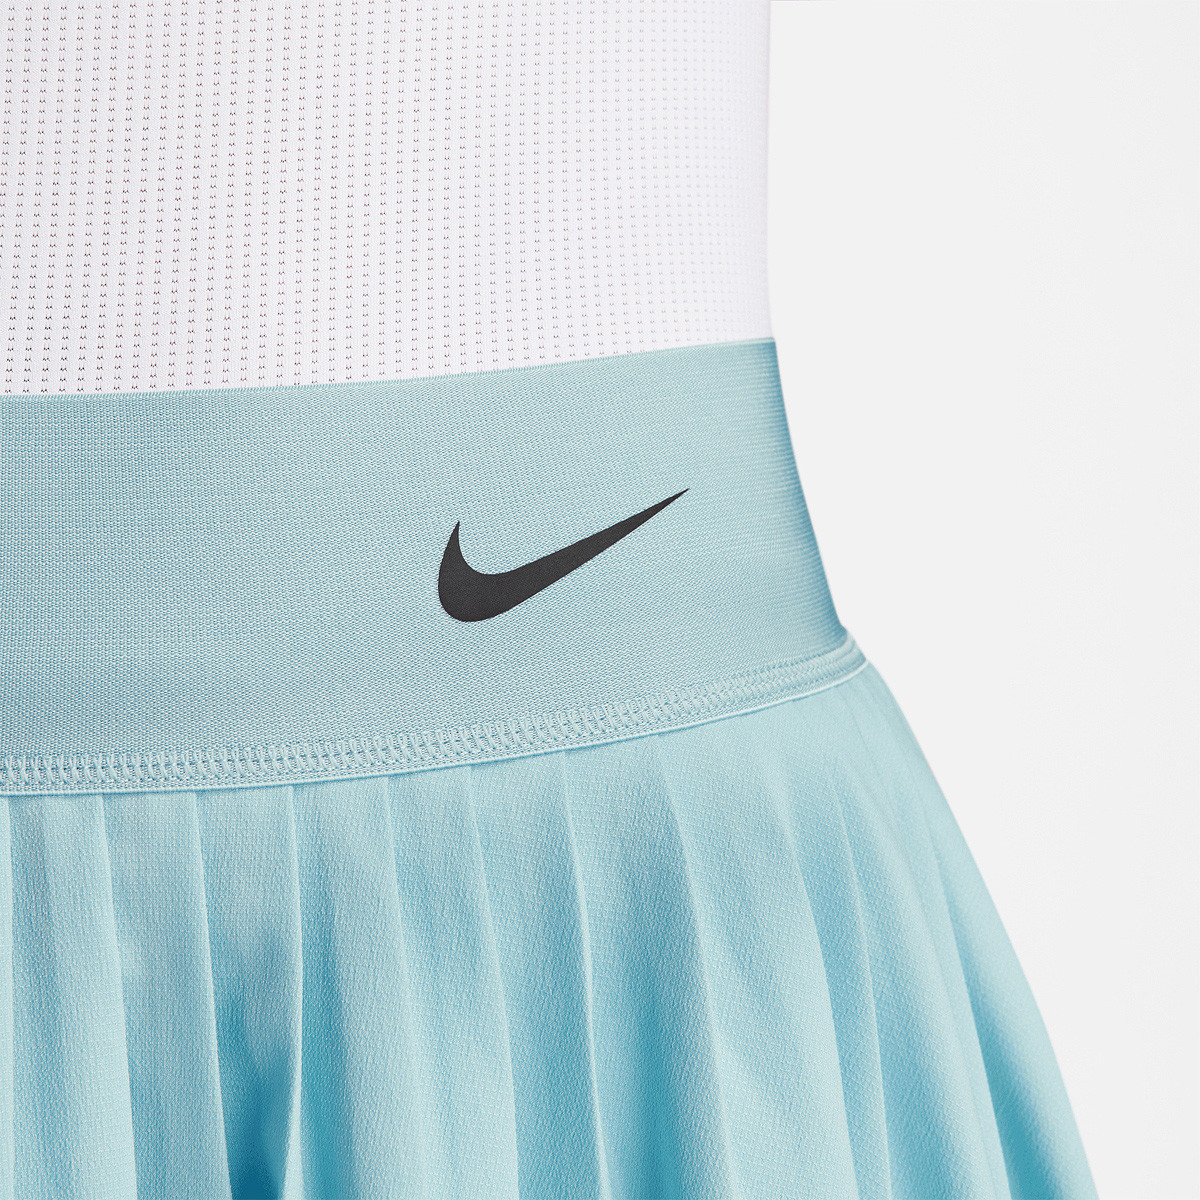 Mujer Tenis Faldas y vestidos. Nike US